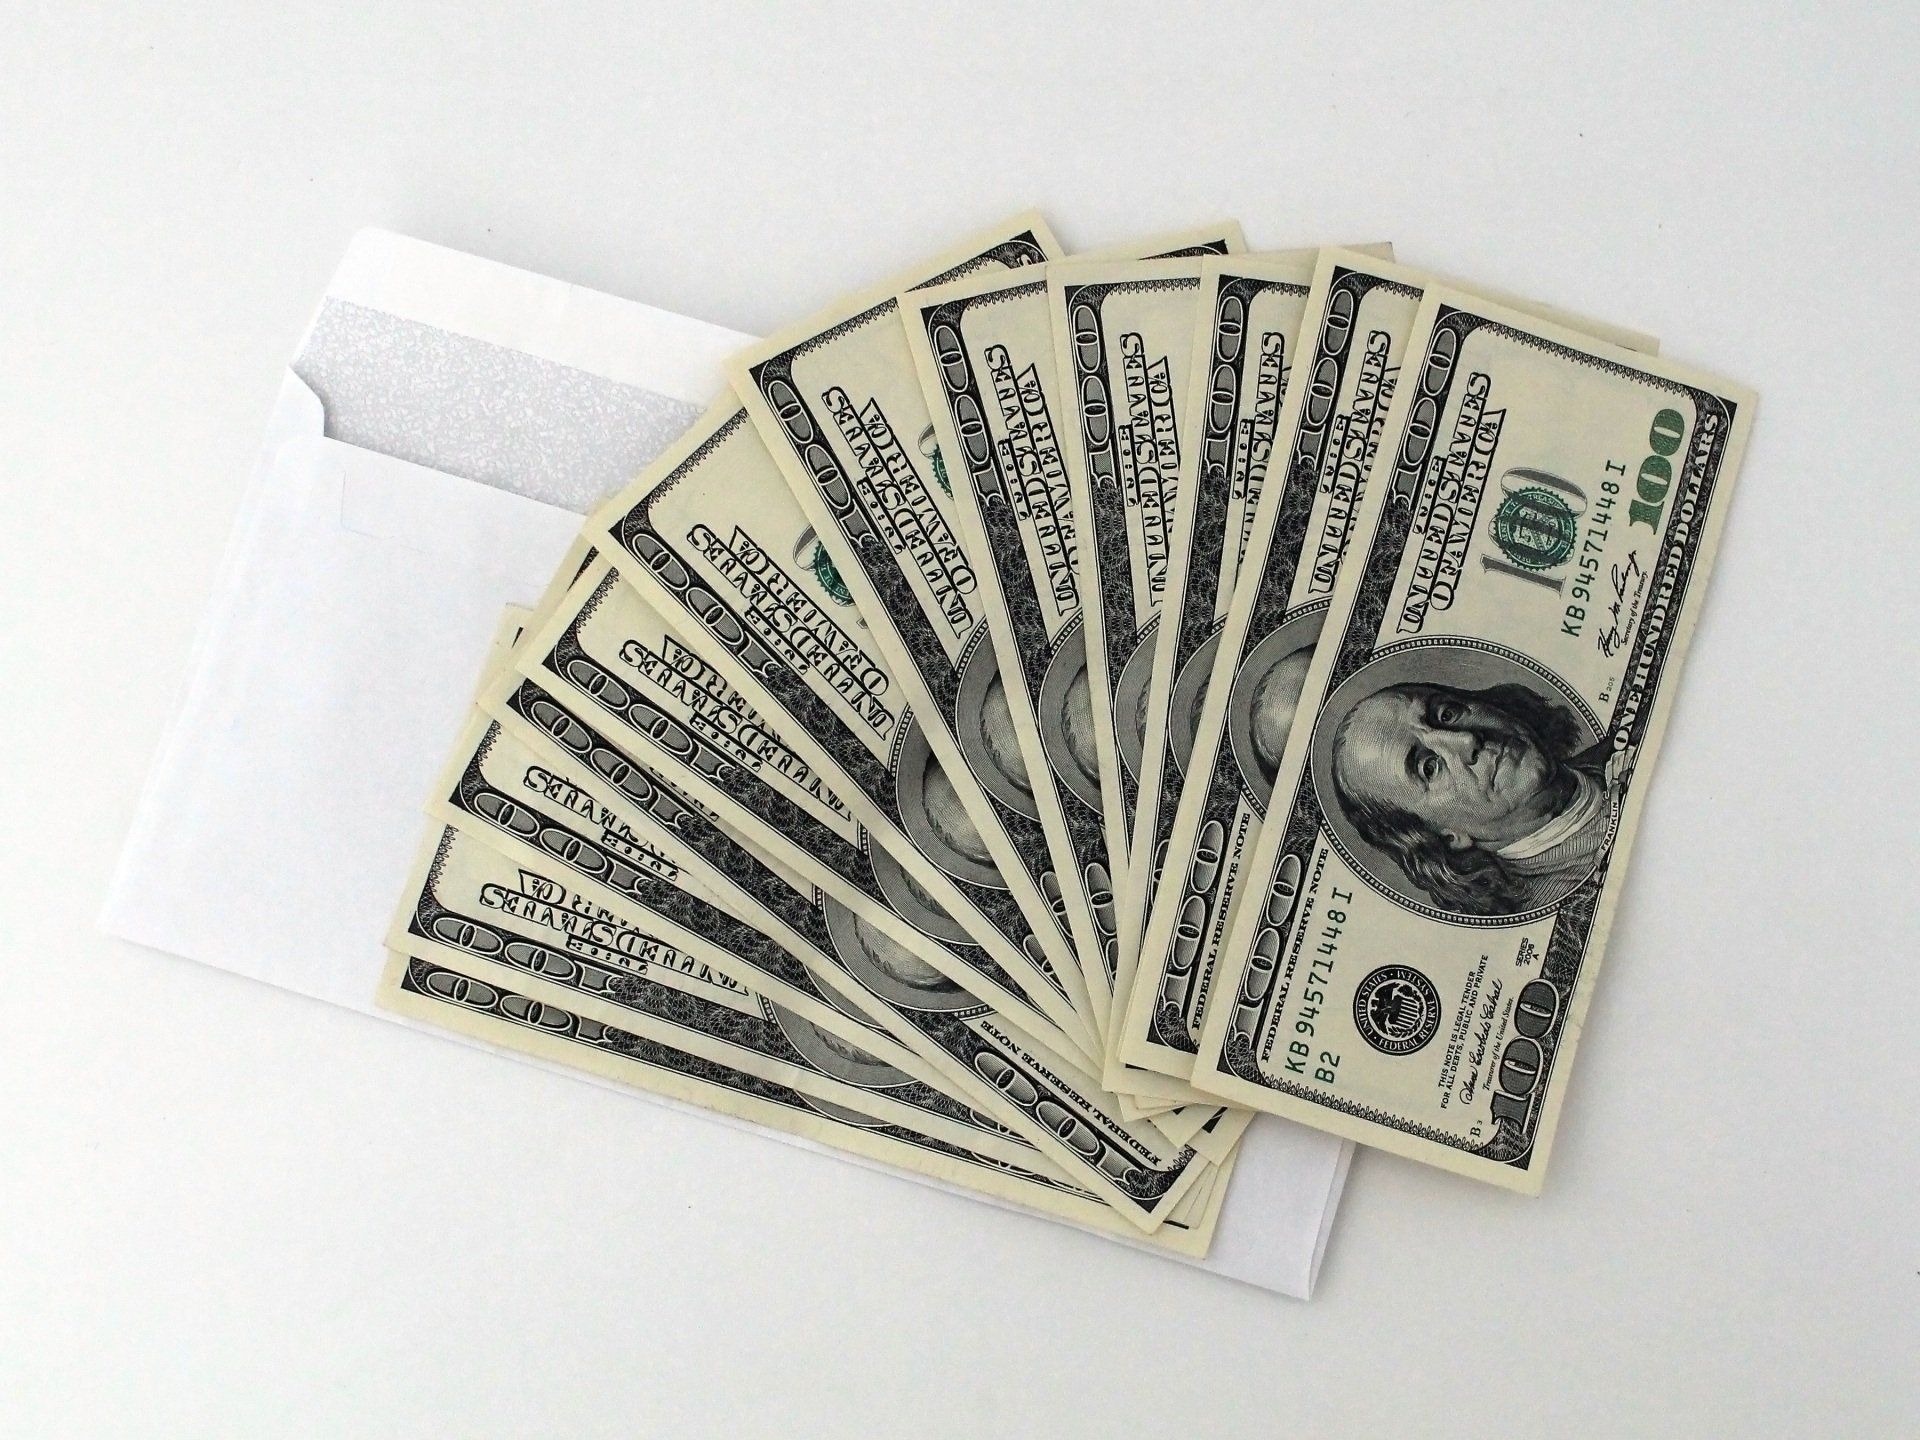 A fan of twenty dollar bills in an envelope